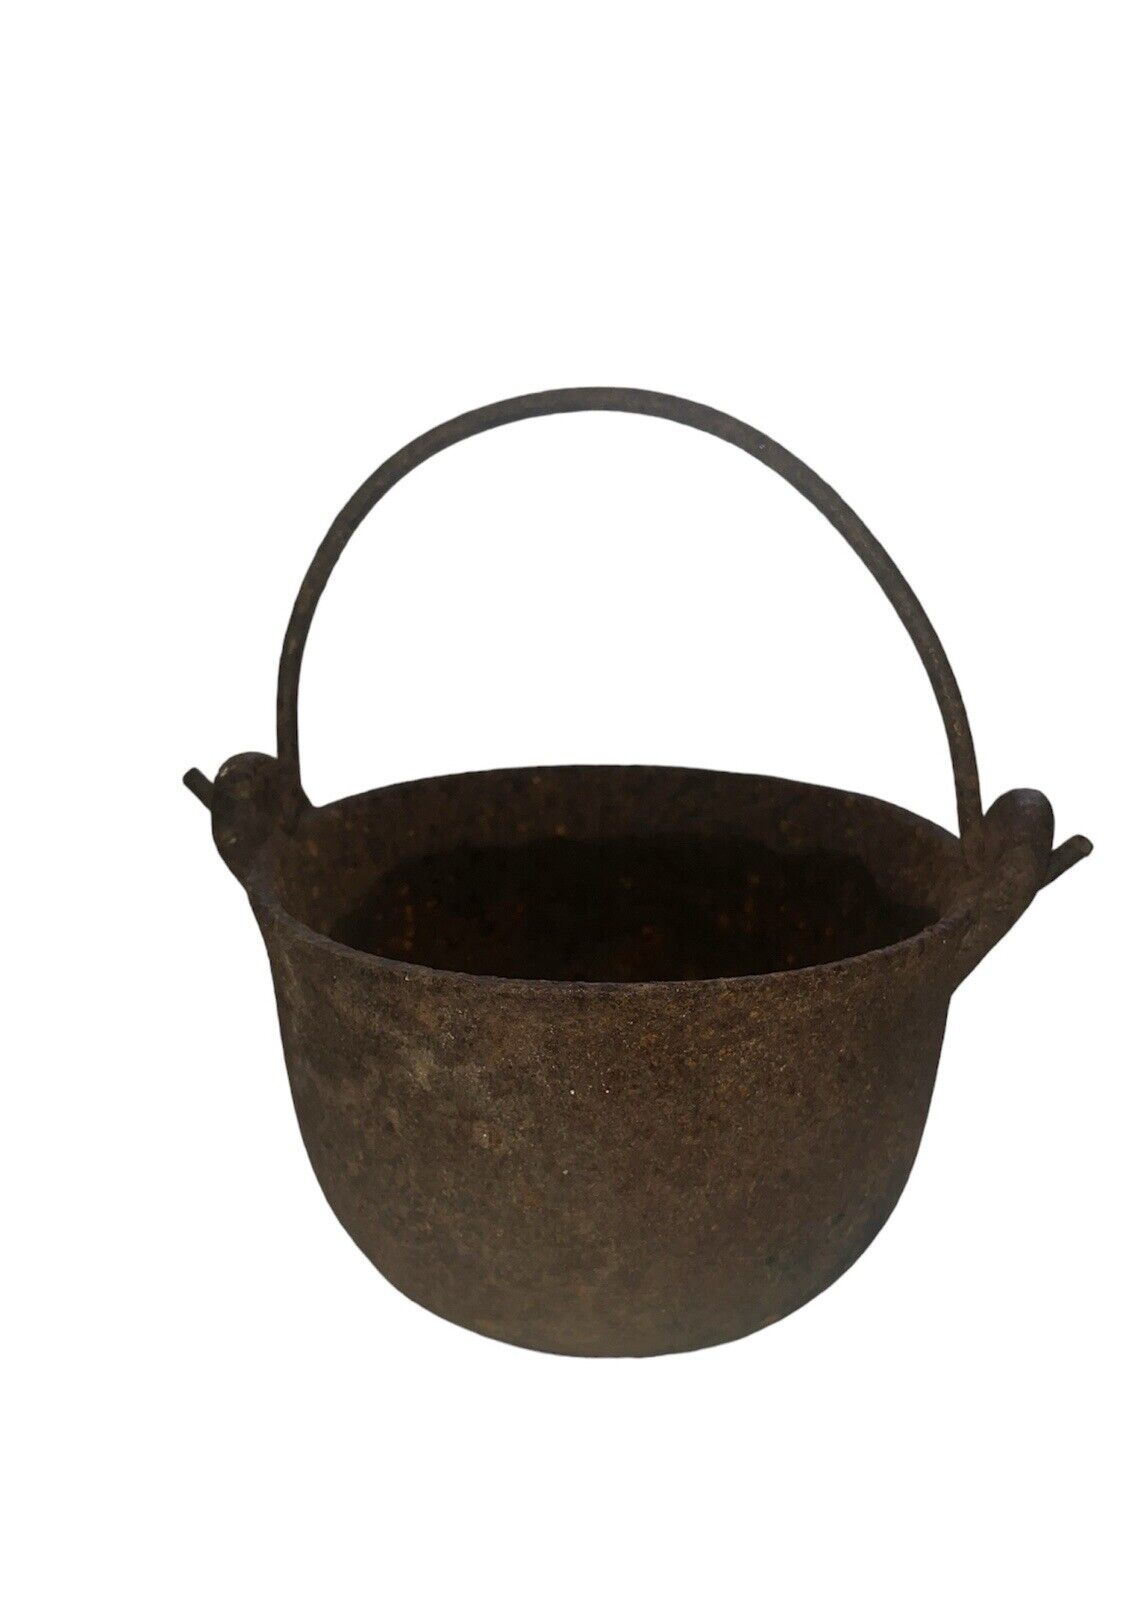 Antique vintage cast iron cauldron kettle pot Rustic